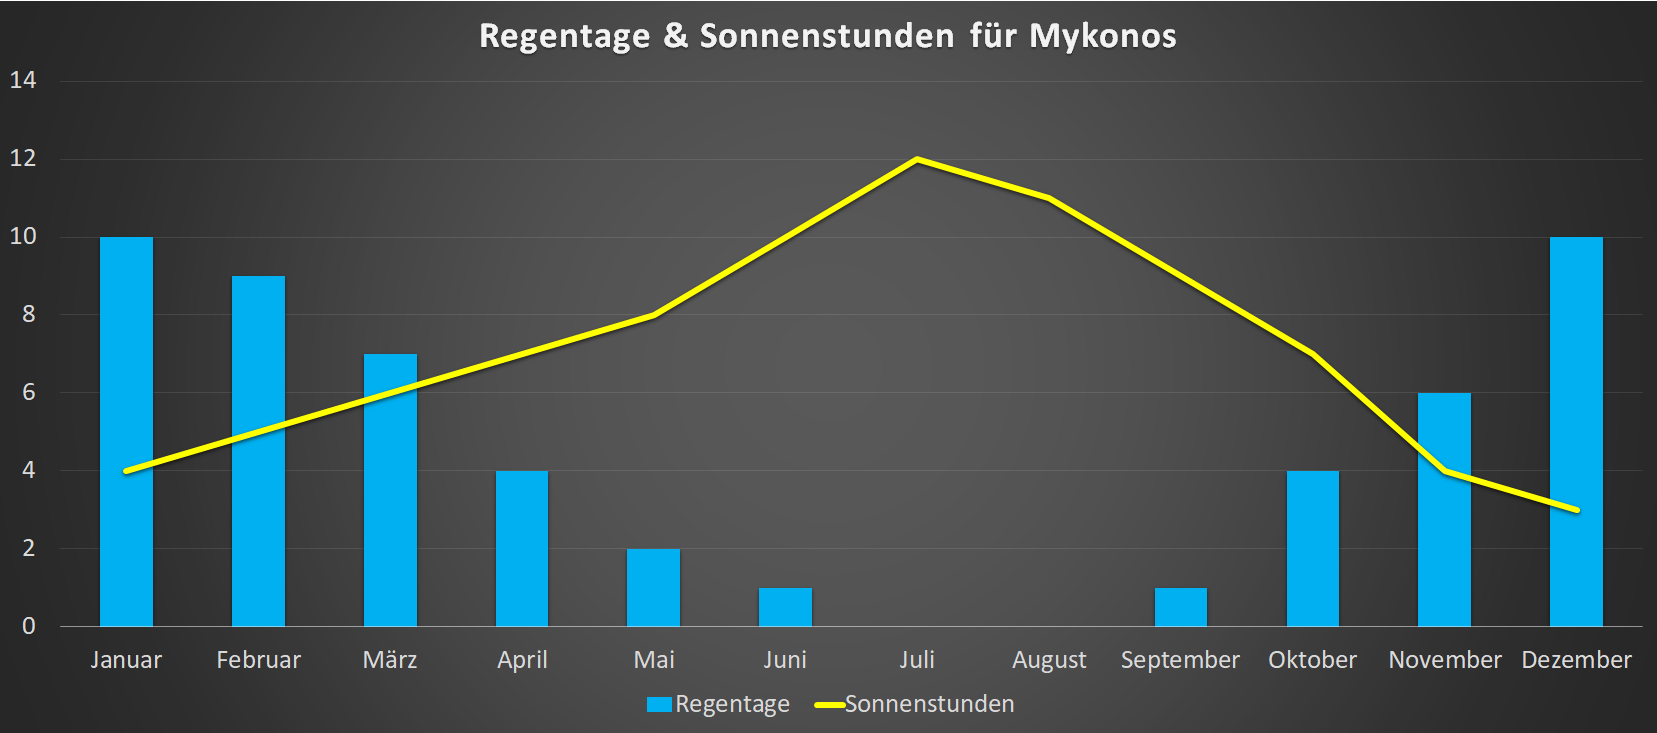 Regentage & Sonnenstunden für Mykonos im Jahresverlauf